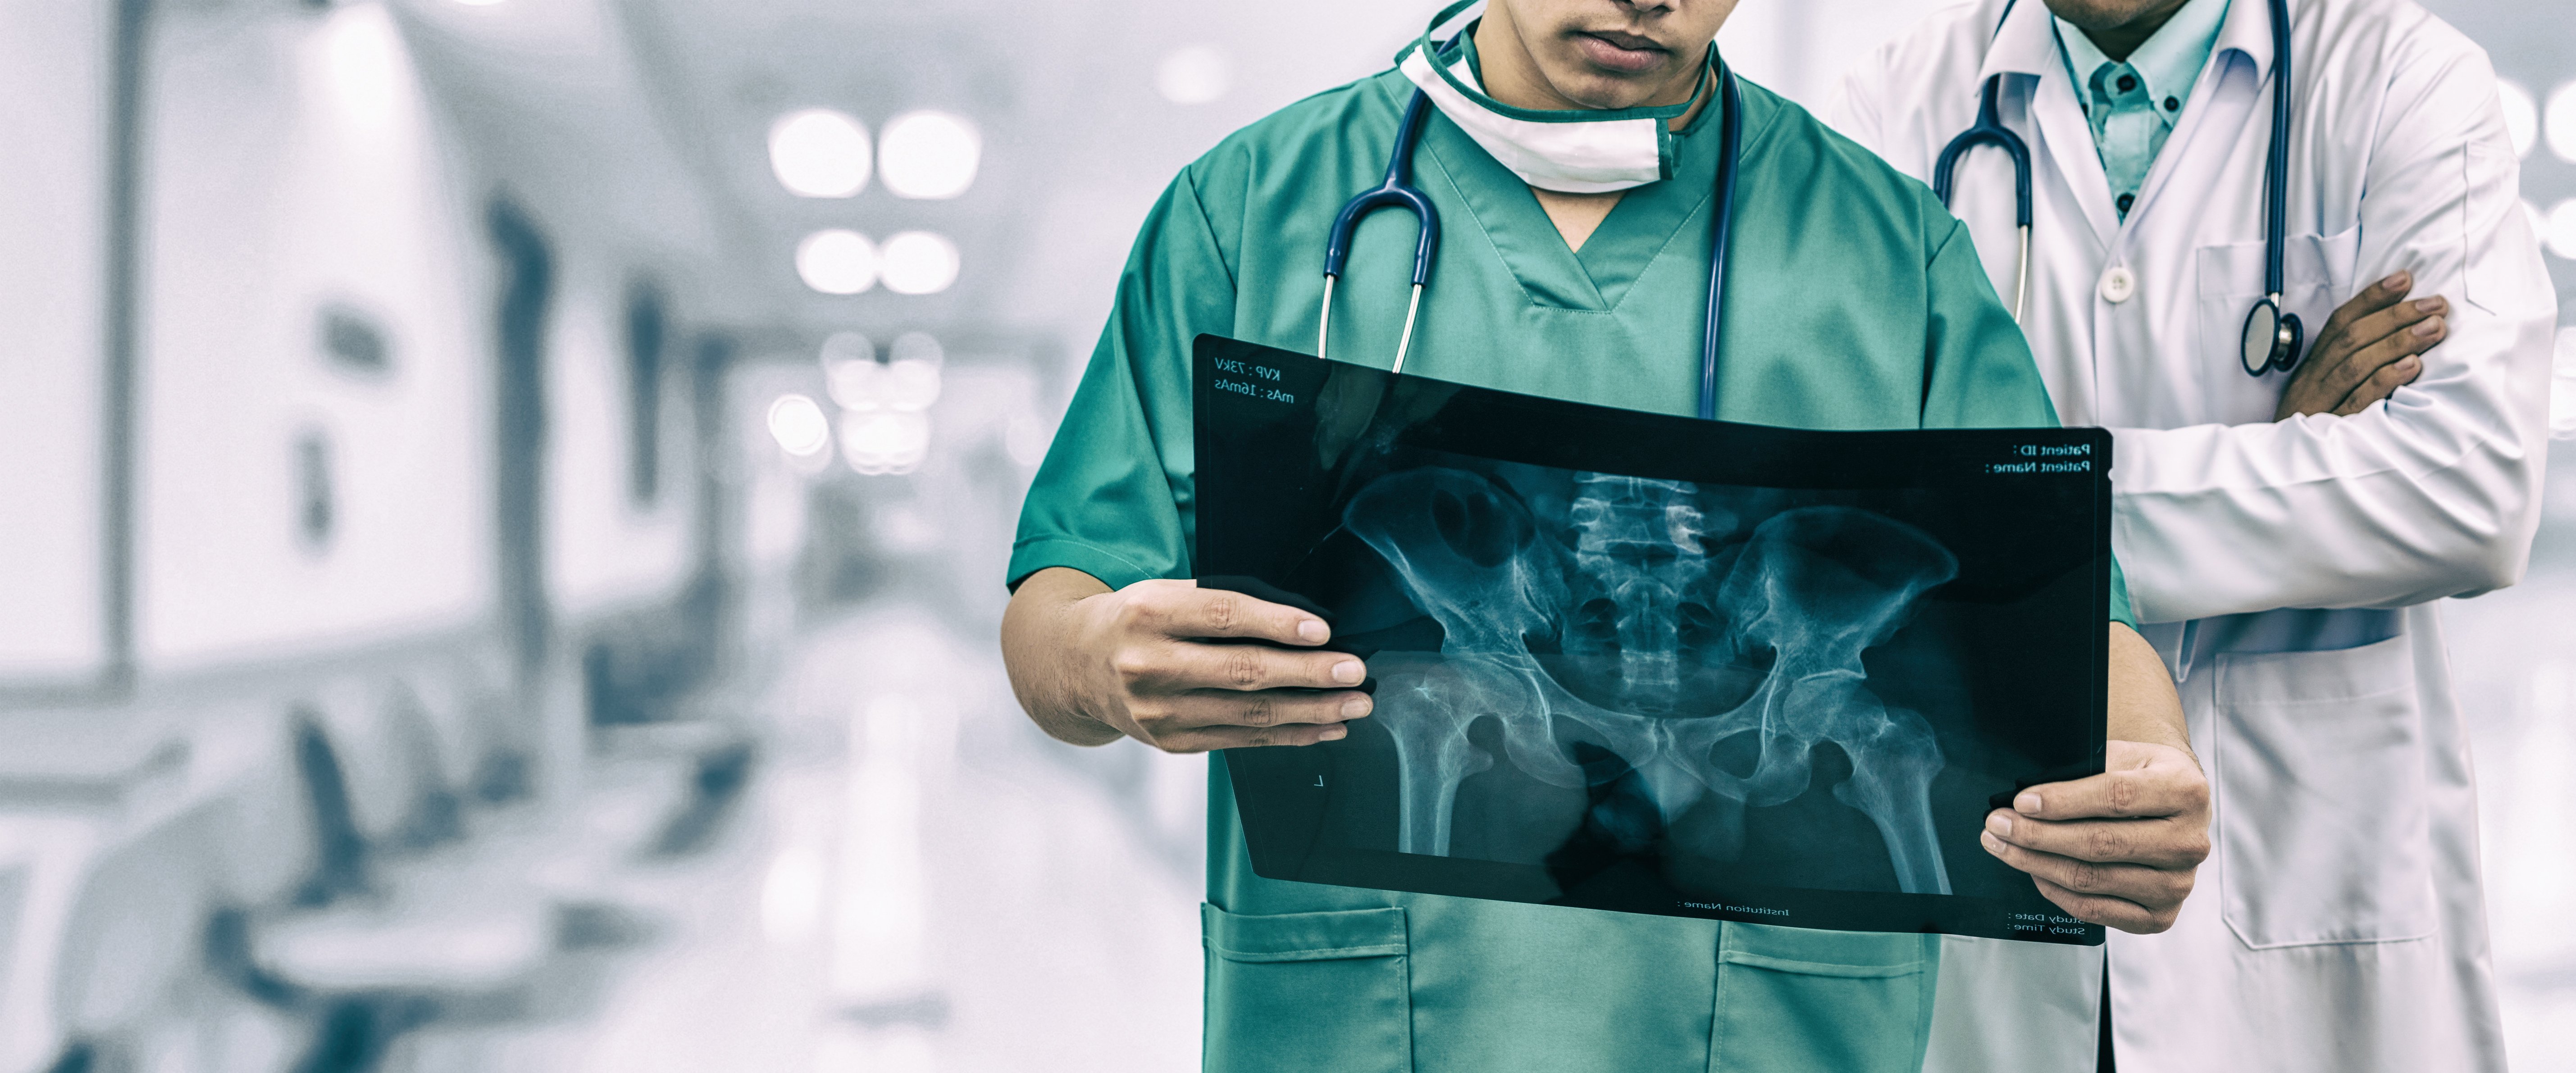 Médicos analizan radiografía | Foto: Shutterstock